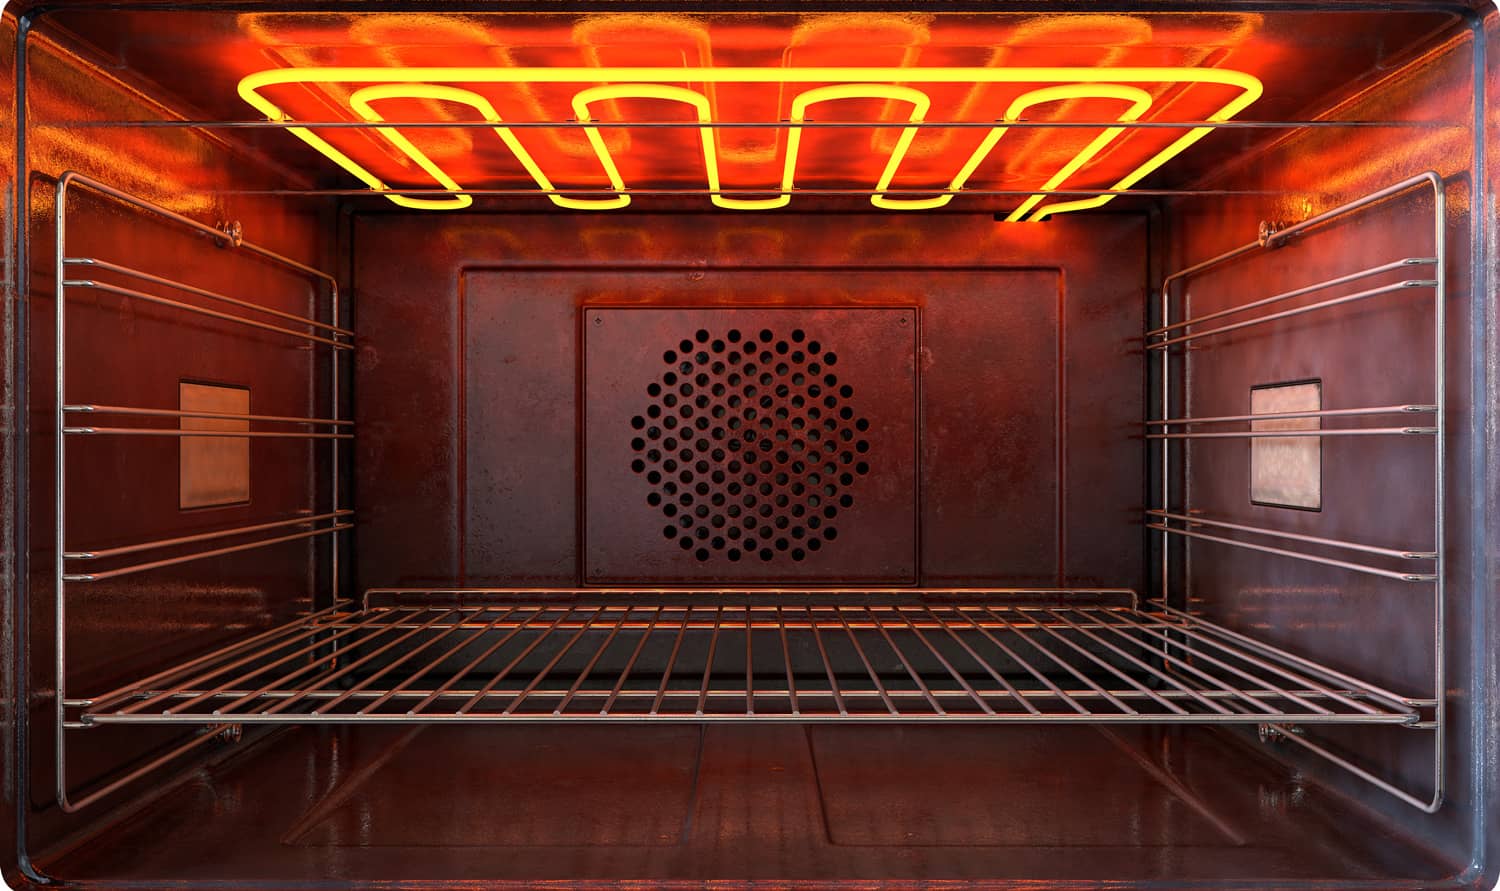 一个近距离的观点，通过内部的空热操作家用烤箱与发光元素和金属架